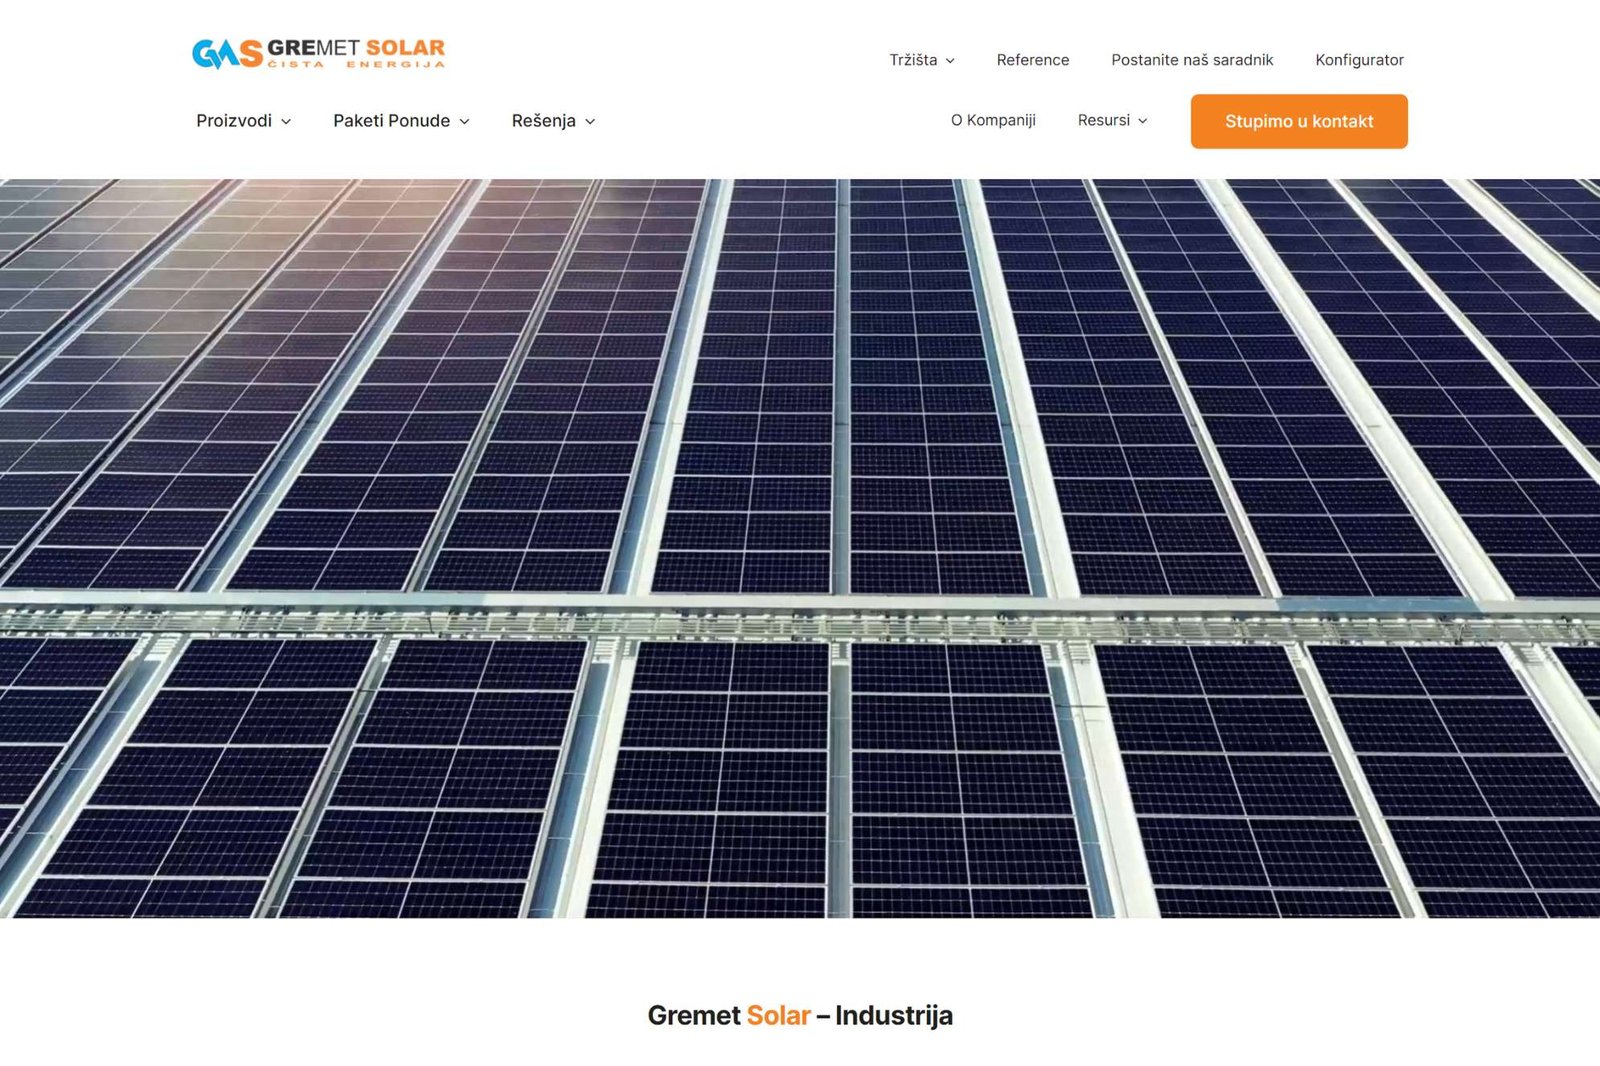 GreMet Solar je kompanija koja se bavi prodajom i instalacijama solarnih sistema i opreme.